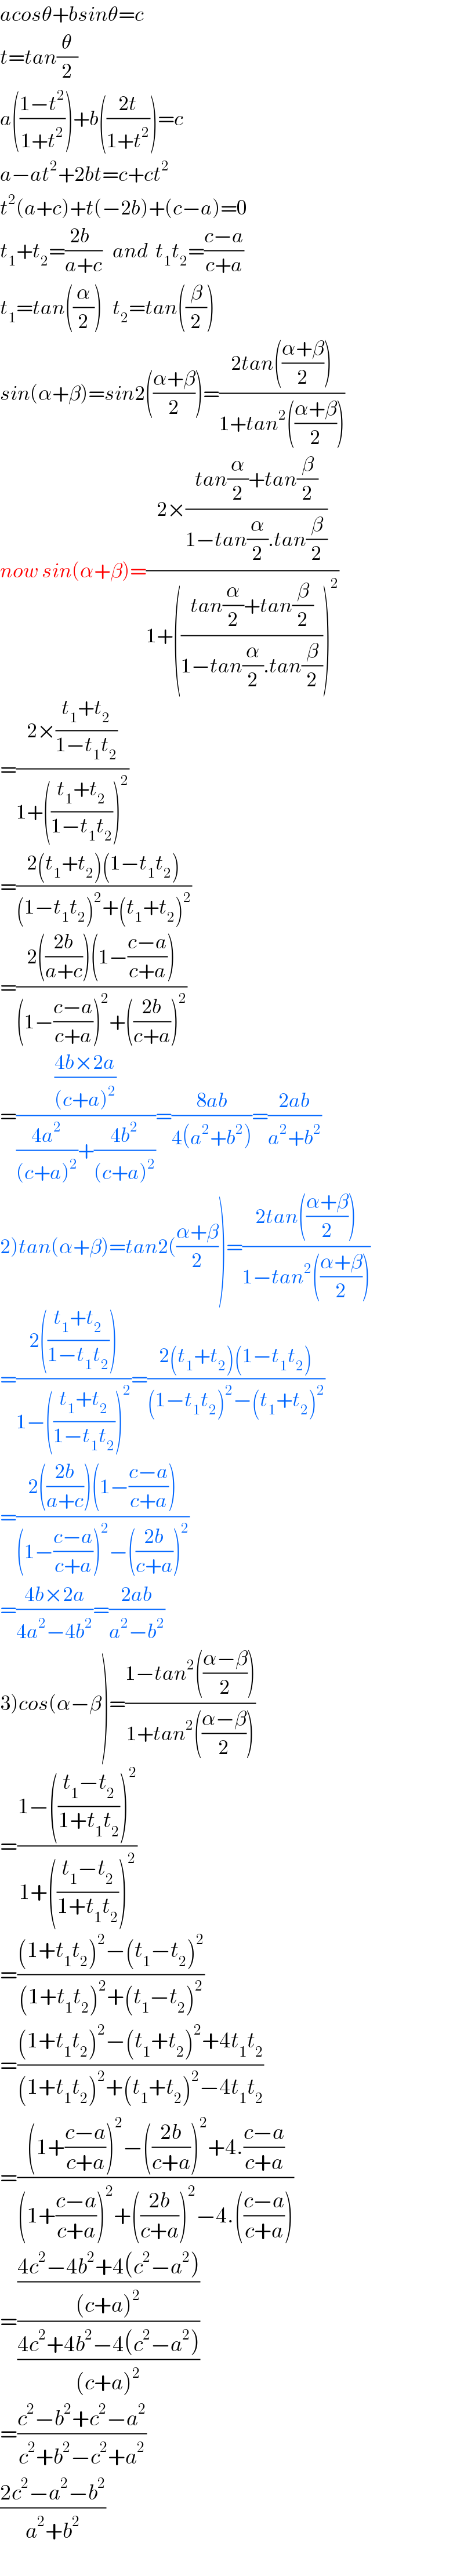 acosθ+bsinθ=c  t=tan(θ/2)  a(((1−t^2 )/(1+t^2 )))+b(((2t)/(1+t^2 )))=c  a−at^2 +2bt=c+ct^2   t^2 (a+c)+t(−2b)+(c−a)=0  t_1 +t_2 =((2b  )/(a+c))   and  t_1 t_2 =((c−a)/(c+a))  t_1 =tan((α/2))   t_2 =tan((β/2))  sin(α+β)=sin2(((α+β)/2))=((2tan(((α+β)/2)))/(1+tan^2 (((α+β)/2))))  now sin(α+β)=((2×((tan(α/2)+tan(β/2))/(1−tan(α/2).tan(β/2))))/(1+(((tan(α/2)+tan(β/2))/(1−tan(α/2).tan(β/2))))^2 ))  =((2×((t_1 +t_2 )/(1−t_1 t_2 )))/(1+(((t_1 +t_2 )/(1−t_1 t_2 )))^2 ))  =((2(t_1 +t_2 )(1−t_1 t_2 ))/((1−t_1 t_2 )^2 +(t_1 +t_2 )^2 ))  =((2(((2b)/(a+c)))(1−((c−a)/(c+a))))/((1−((c−a)/(c+a)))^2 +(((2b)/(c+a)))^2 ))  =(((4b×2a)/((c+a)^2 ))/(((4a^2 )/((c+a)^2 ))+((4b^2 )/((c+a)^2 ))))=((8ab)/(4(a^2 +b^2 )))=((2ab)/(a^2 +b^2 ))  2)tan(α+β)=tan2(((α+β)/2))=((2tan(((α+β)/2)))/(1−tan^2 (((α+β)/2))))  =((2(((t_1 +t_2 )/(1−t_1 t_2 ))))/(1−(((t_1 +t_2 )/(1−t_1 t_2 )))^2 ))=((2(t_1 +t_2 )(1−t_1 t_2 ))/((1−t_1 t_2 )^2 −(t_1 +t_2 )^2 ))  =((2(((2b)/(a+c)))(1−((c−a)/(c+a))))/((1−((c−a)/(c+a)))^2 −(((2b)/(c+a)))^2 ))  =((4b×2a)/(4a^2 −4b^2 ))=((2ab)/(a^2 −b^2 ))  3)cos(α−β)=((1−tan^2 (((α−β)/2)))/(1+tan^2 (((α−β)/2))))  =((1−(((t_1 −t_2 )/(1+t_1 t_2 )))^2 )/(1+(((t_1 −t_2 )/(1+t_1 t_2 )))^2 ))  =(((1+t_1 t_2 )^2 −(t_1 −t_2 )^2 )/((1+t_1 t_2 )^2 +(t_1 −t_2 )^2 ))  =(((1+t_1 t_2 )^2 −(t_1 +t_2 )^2 +4t_1 t_2 )/((1+t_1 t_2 )^2 +(t_1 +t_2 )^2 −4t_1 t_2 ))  =(((1+((c−a)/(c+a)))^2 −(((2b)/(c+a)))^2 +4.((c−a)/(c+a)))/((1+((c−a)/(c+a)))^2 +(((2b)/(c+a)))^2 −4.(((c−a)/(c+a)))))  =(((4c^2 −4b^2 +4(c^2 −a^2 ))/((c+a)^2 ))/((4c^2 +4b^2 −4(c^2 −a^2 ))/((c+a)^2 )))  =((c^2 −b^2 +c^2 −a^2 )/(c^2 +b^2 −c^2 +a^2 ))  ((2c^2 −a^2 −b^2 )/(a^2 +b^2 ))  